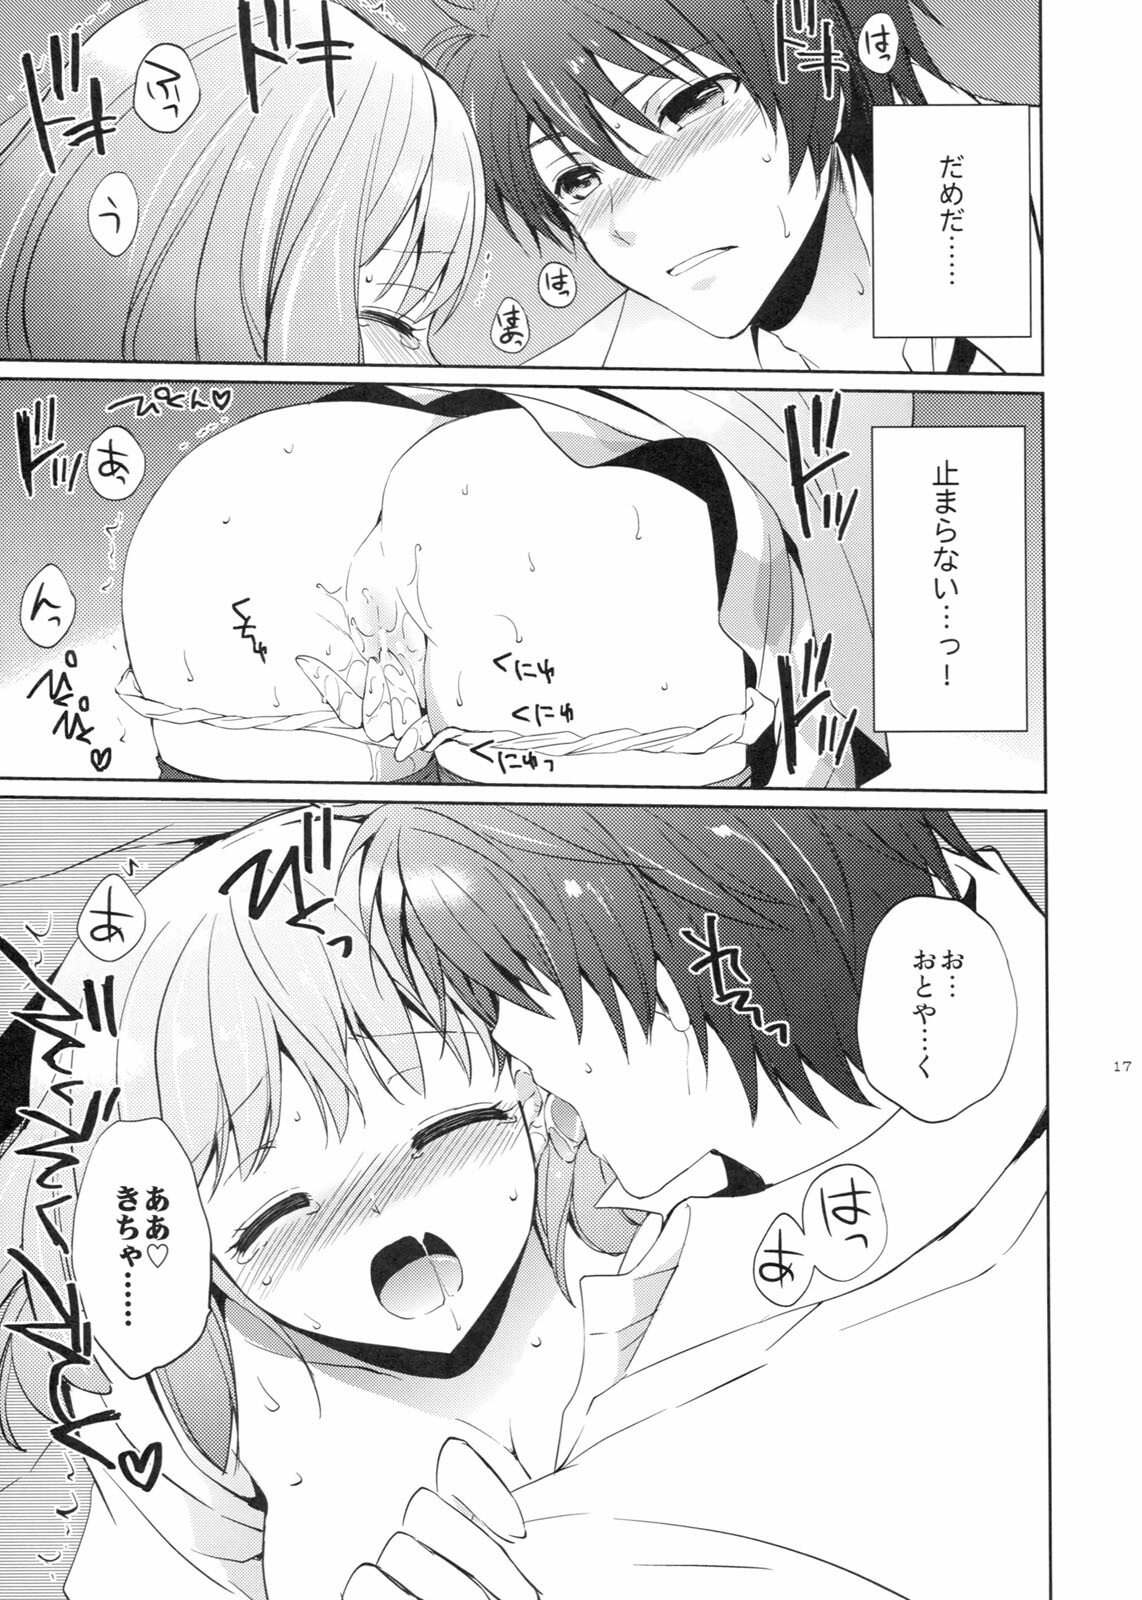 (SC53) [Kurimomo (Tsukako)] evergreen + Omake (Uta no Prince-sama) page 16 full